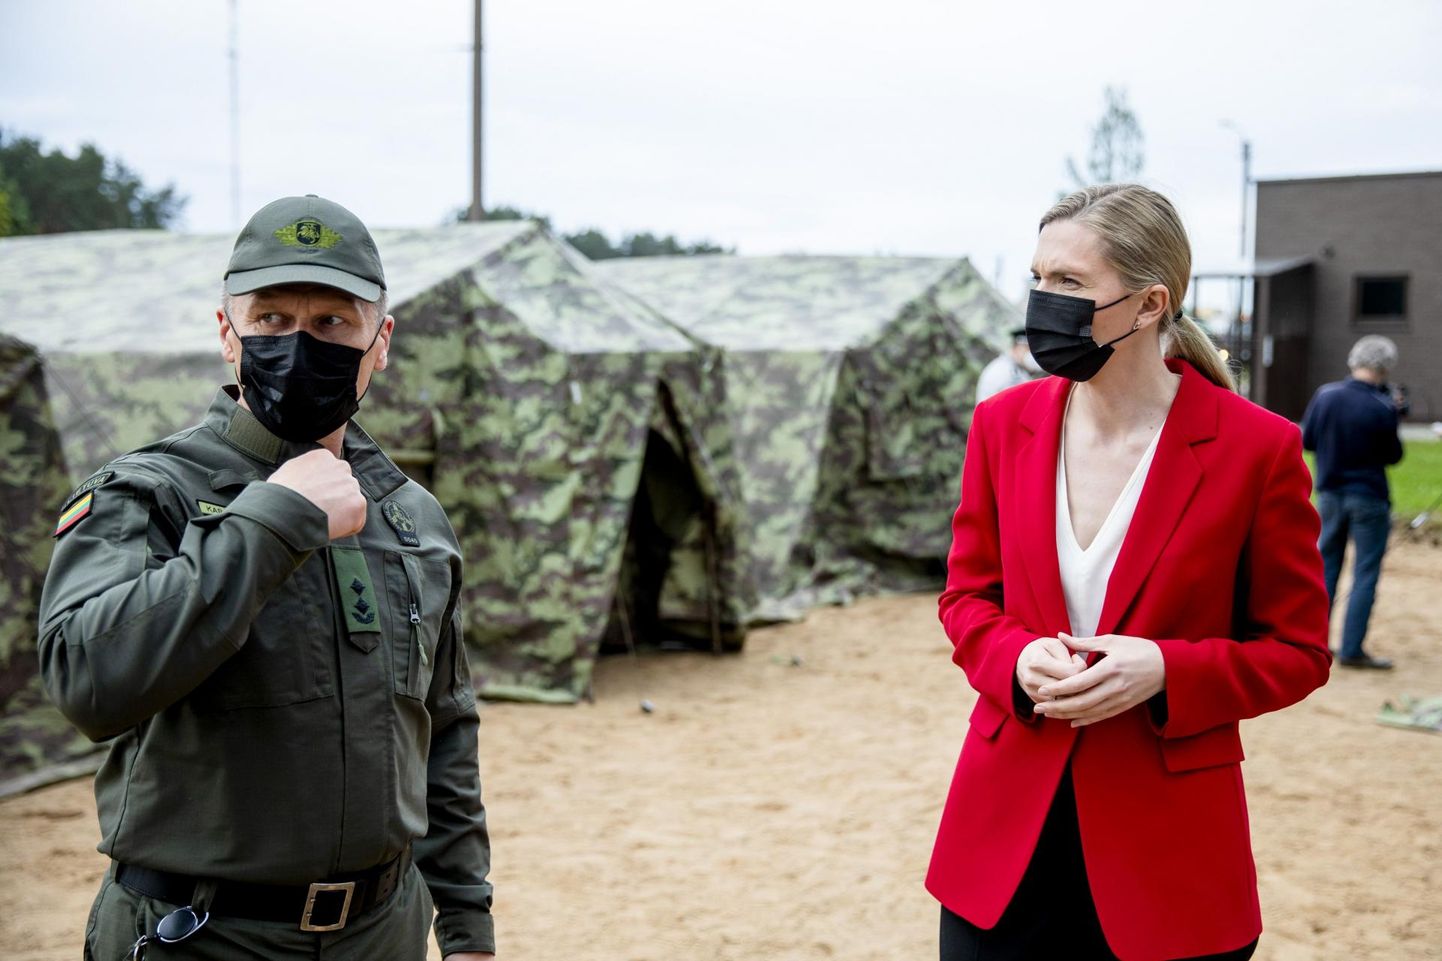 Leedu siseminister Agnė Bilotaitė (paremal) külastas üle-eelmisel nädalal Pabradė põgenikekeskust, kuhu on üles seatud telklinnak Valgevenest saabuvate migrantide majutamiseks.